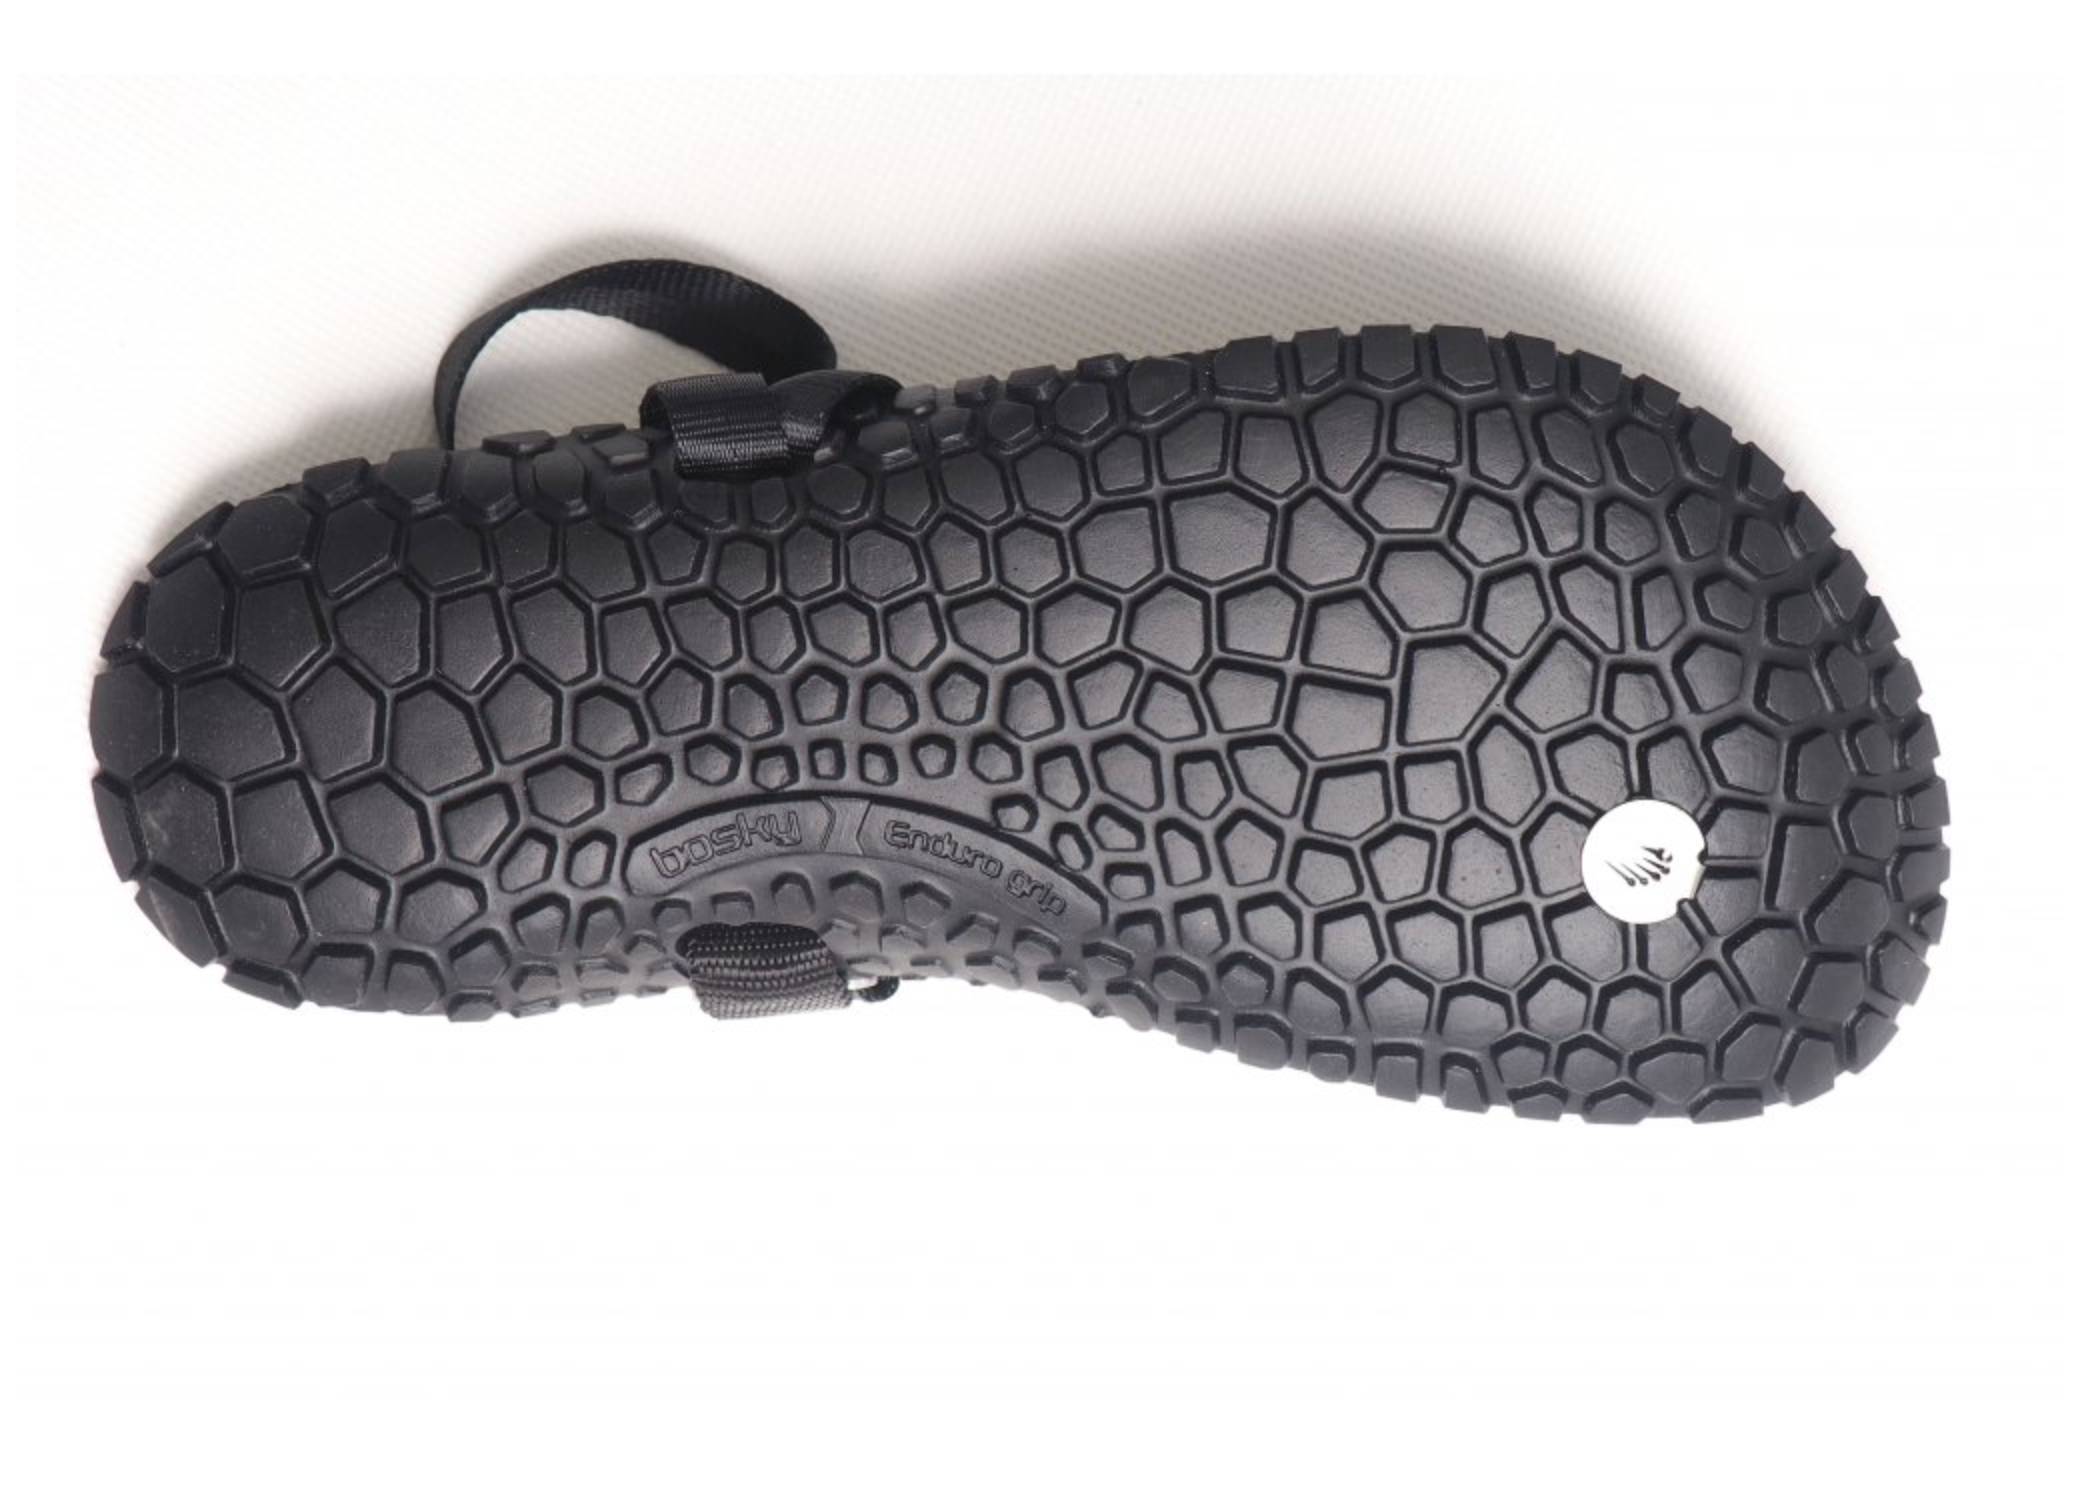 Bosky Enduro Leather 2.0 Y barfods sandaler til kvinder og mænd i farven black, saal